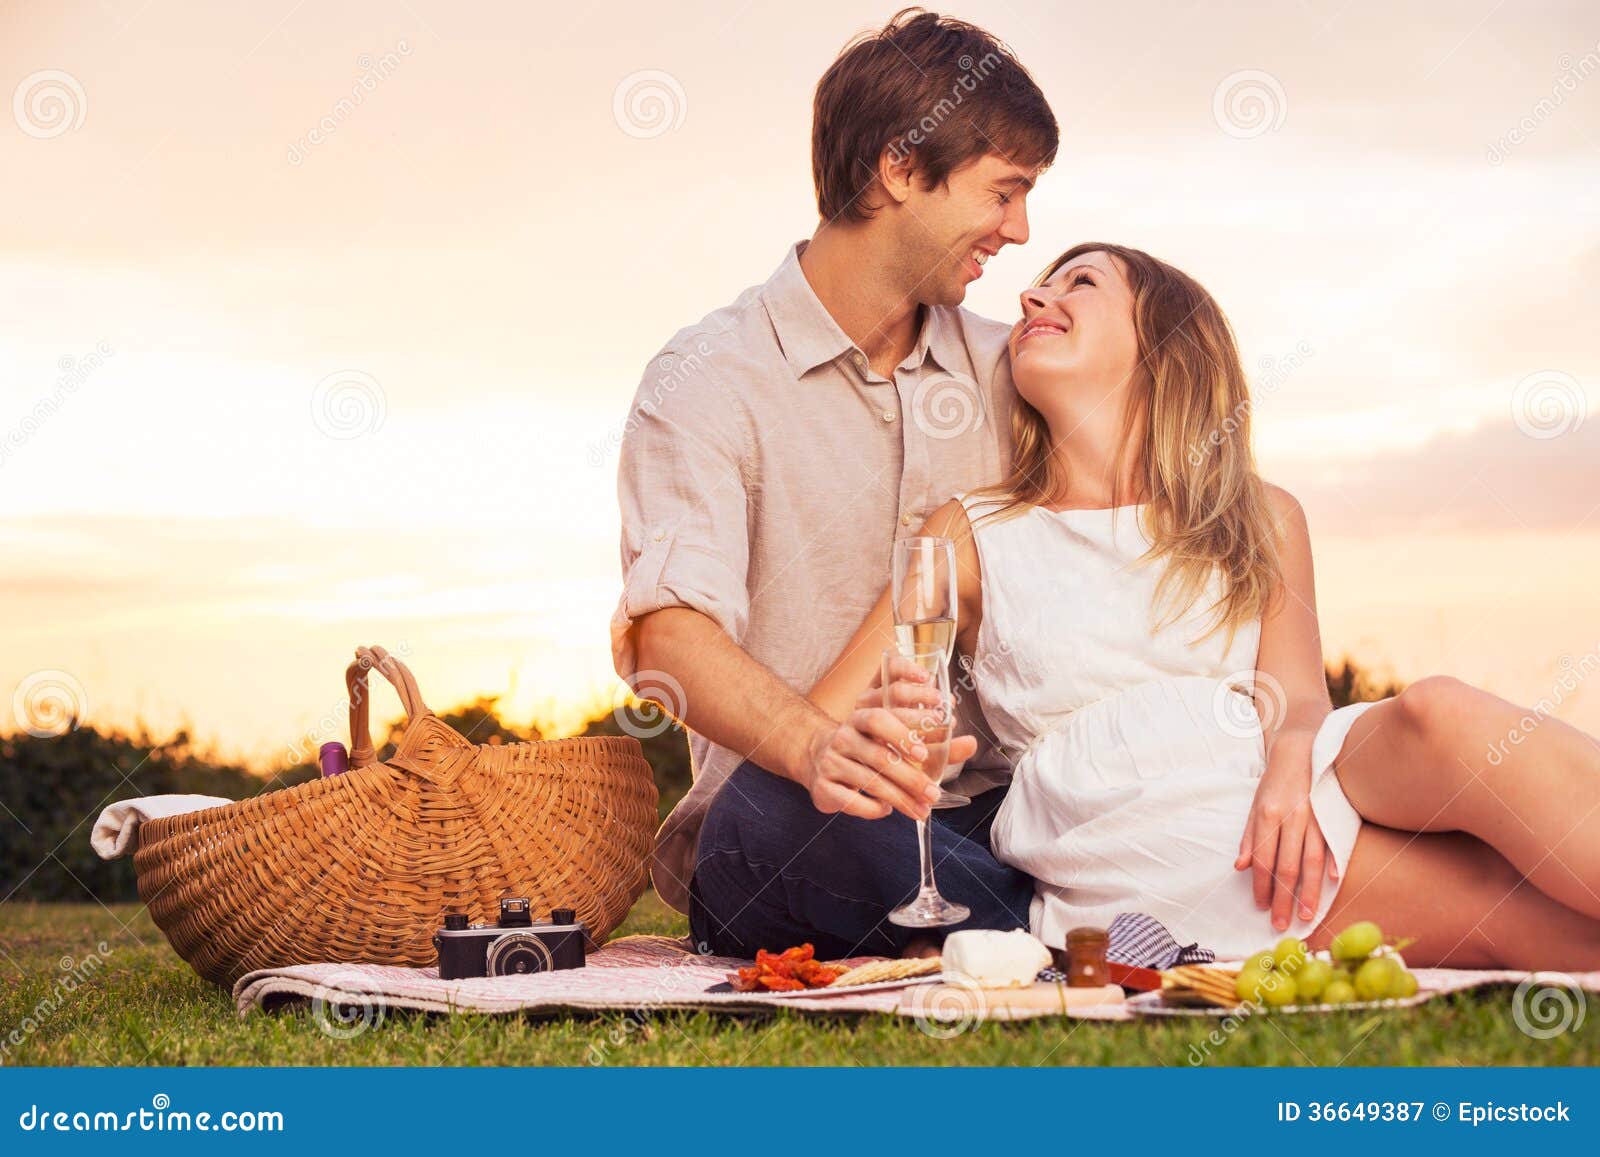 Couple Enjoying Romantic Sunset Picnic Stock Image Image Of Basket Lifestyle 36649387